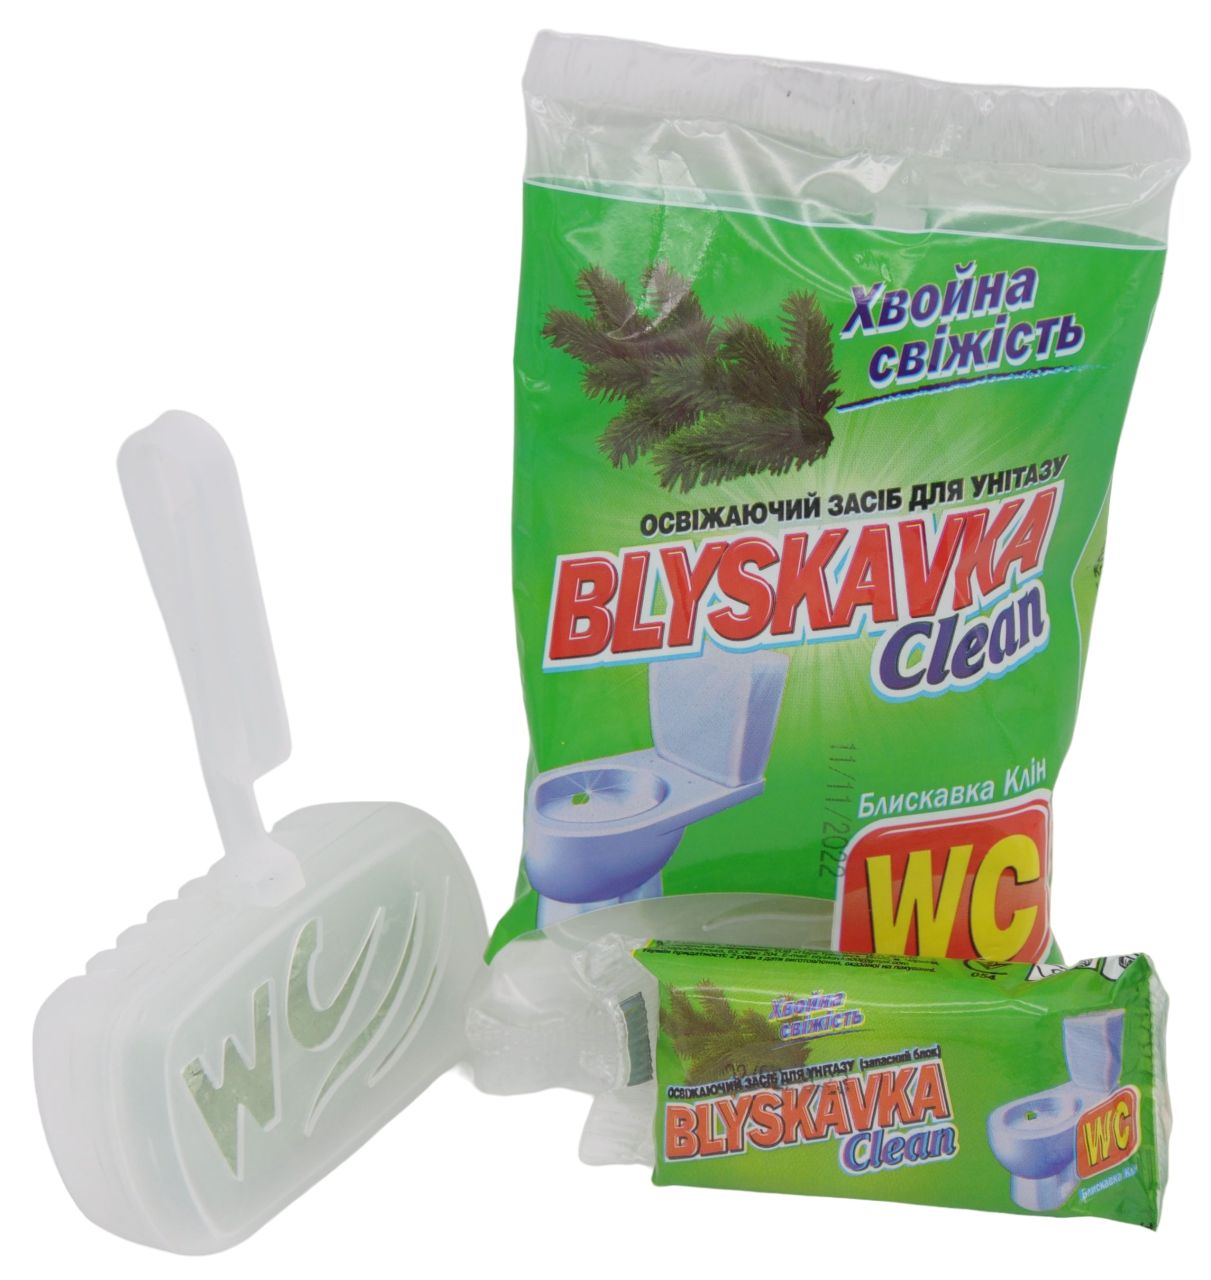 Освежающее средство для унитаза Blyskavka Clean Хвойная свежесть - фото 3